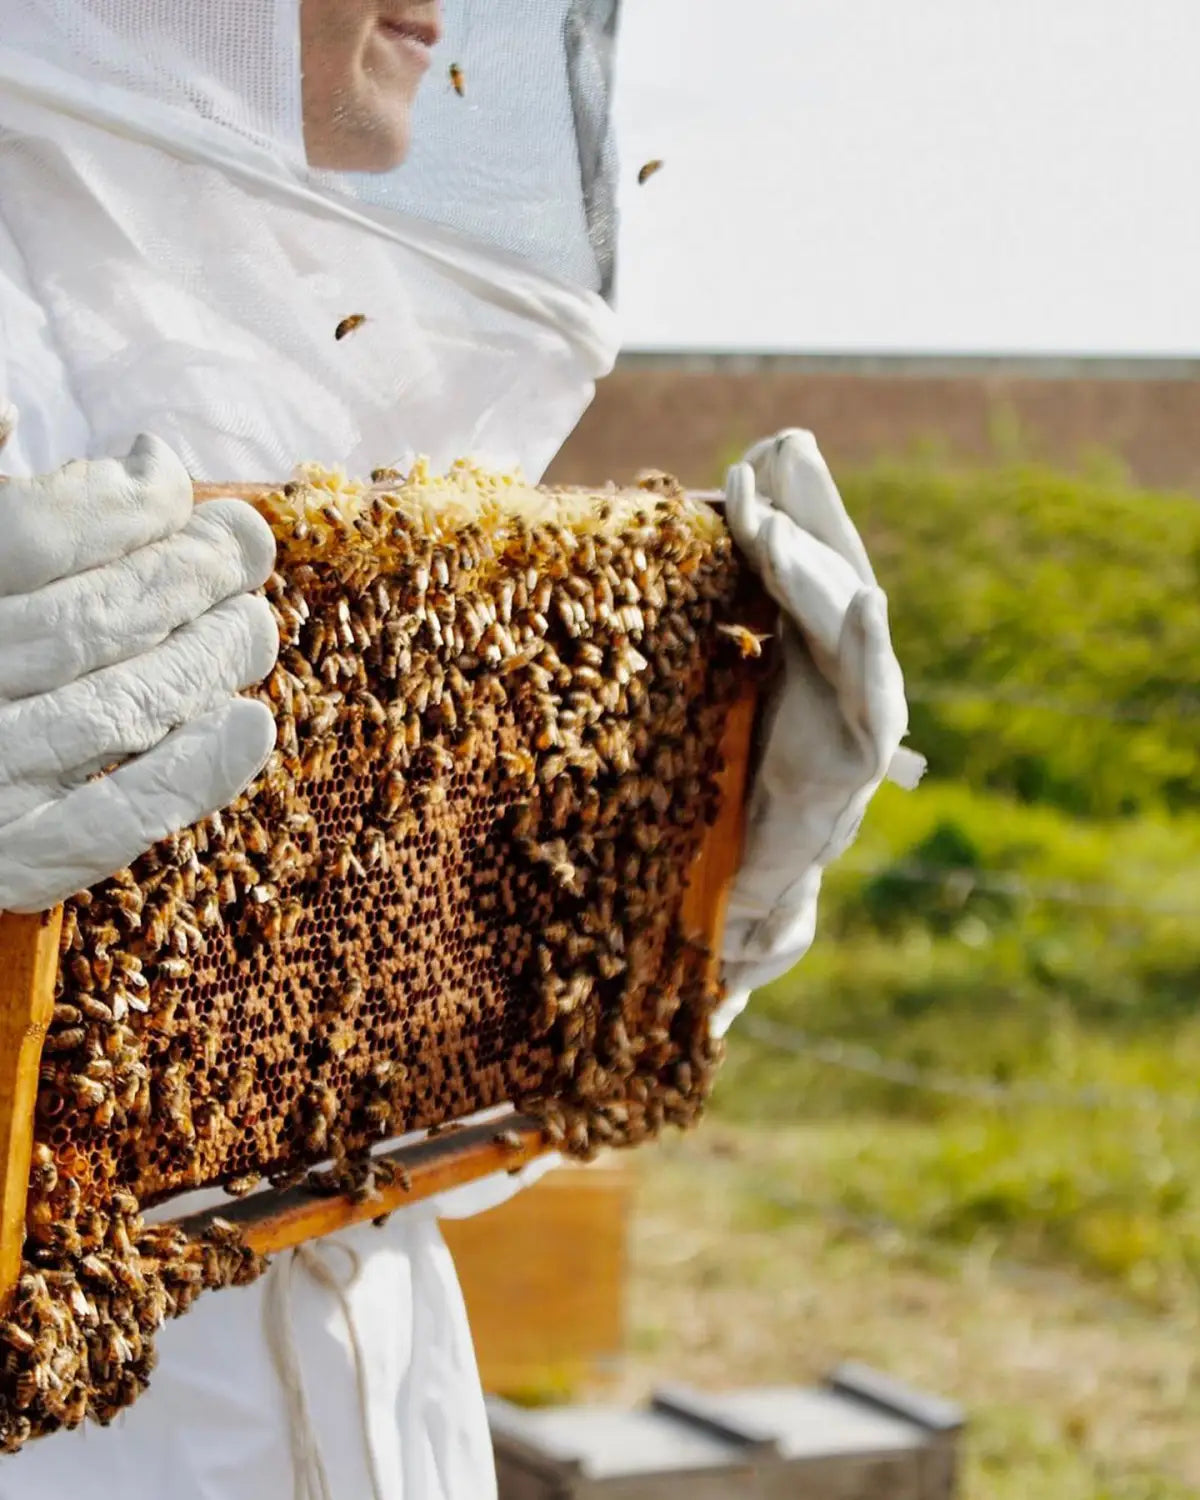 La importancia de las abejas: entrevista con Frida Rivera por Revista Glamour